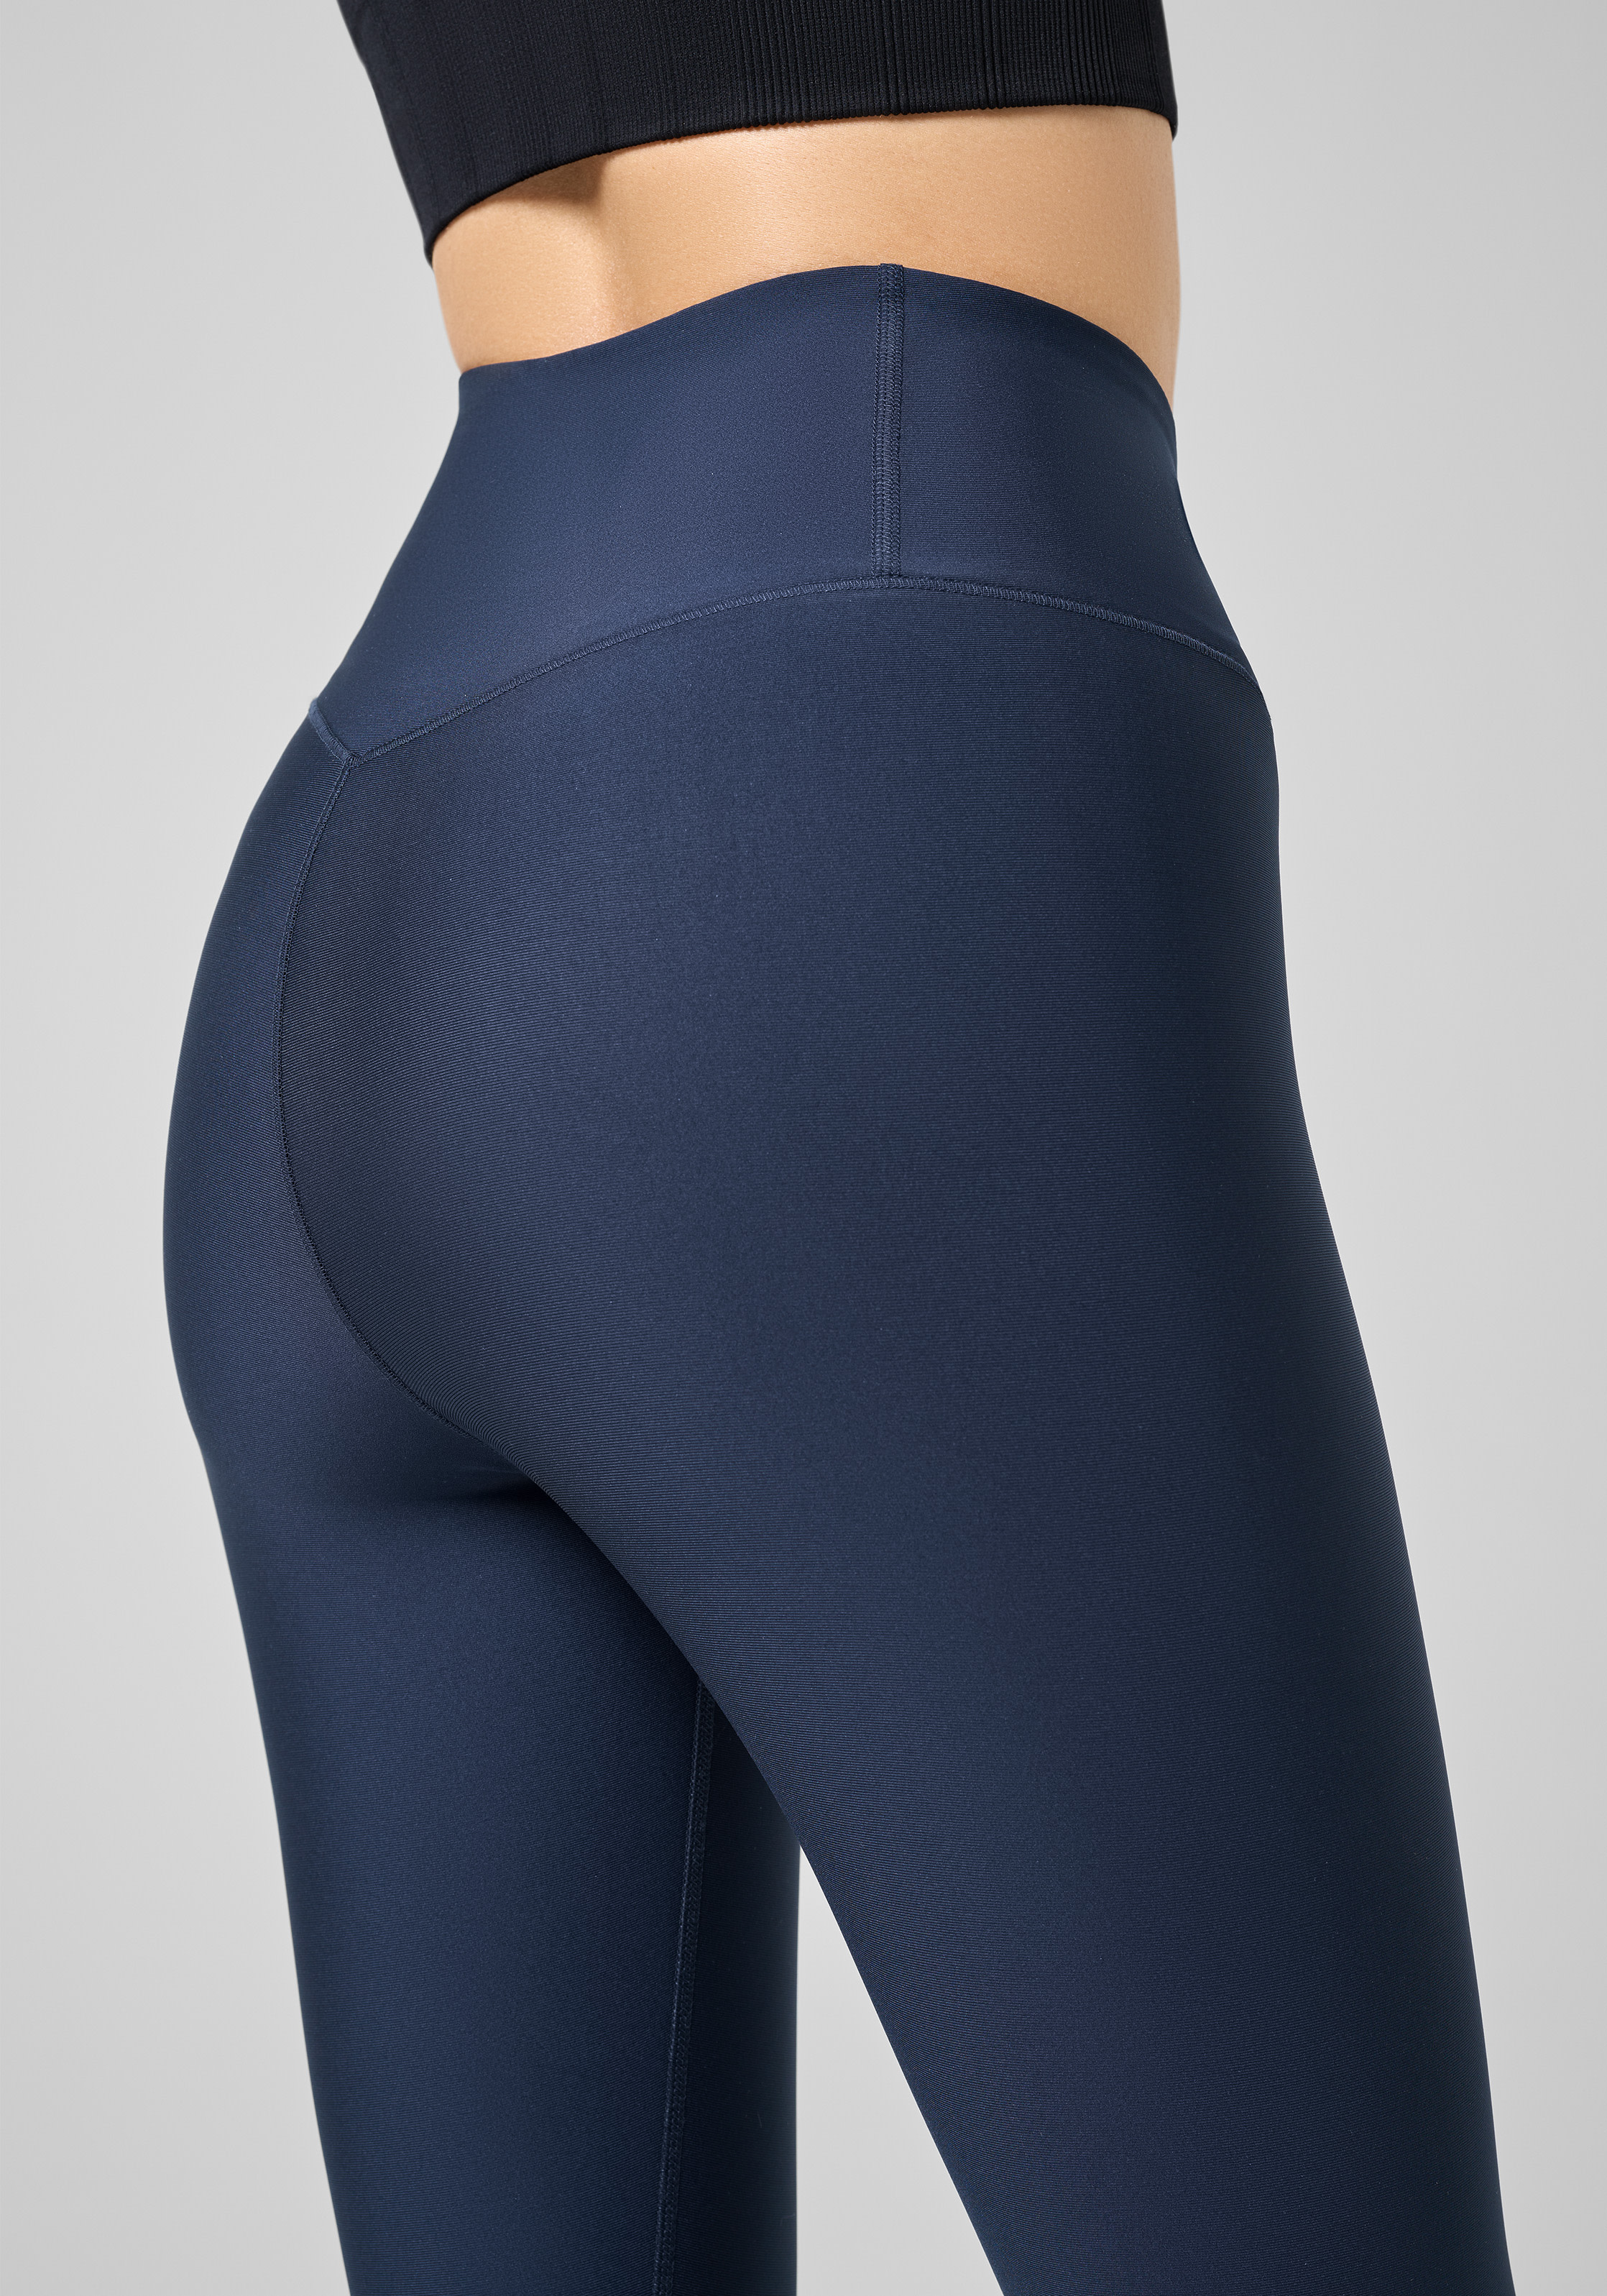 https://www.fjellsport.no/assets/blobs/casall-women-s-graphic-sport-tights-core-blue-4a5d1f04cc.jpeg